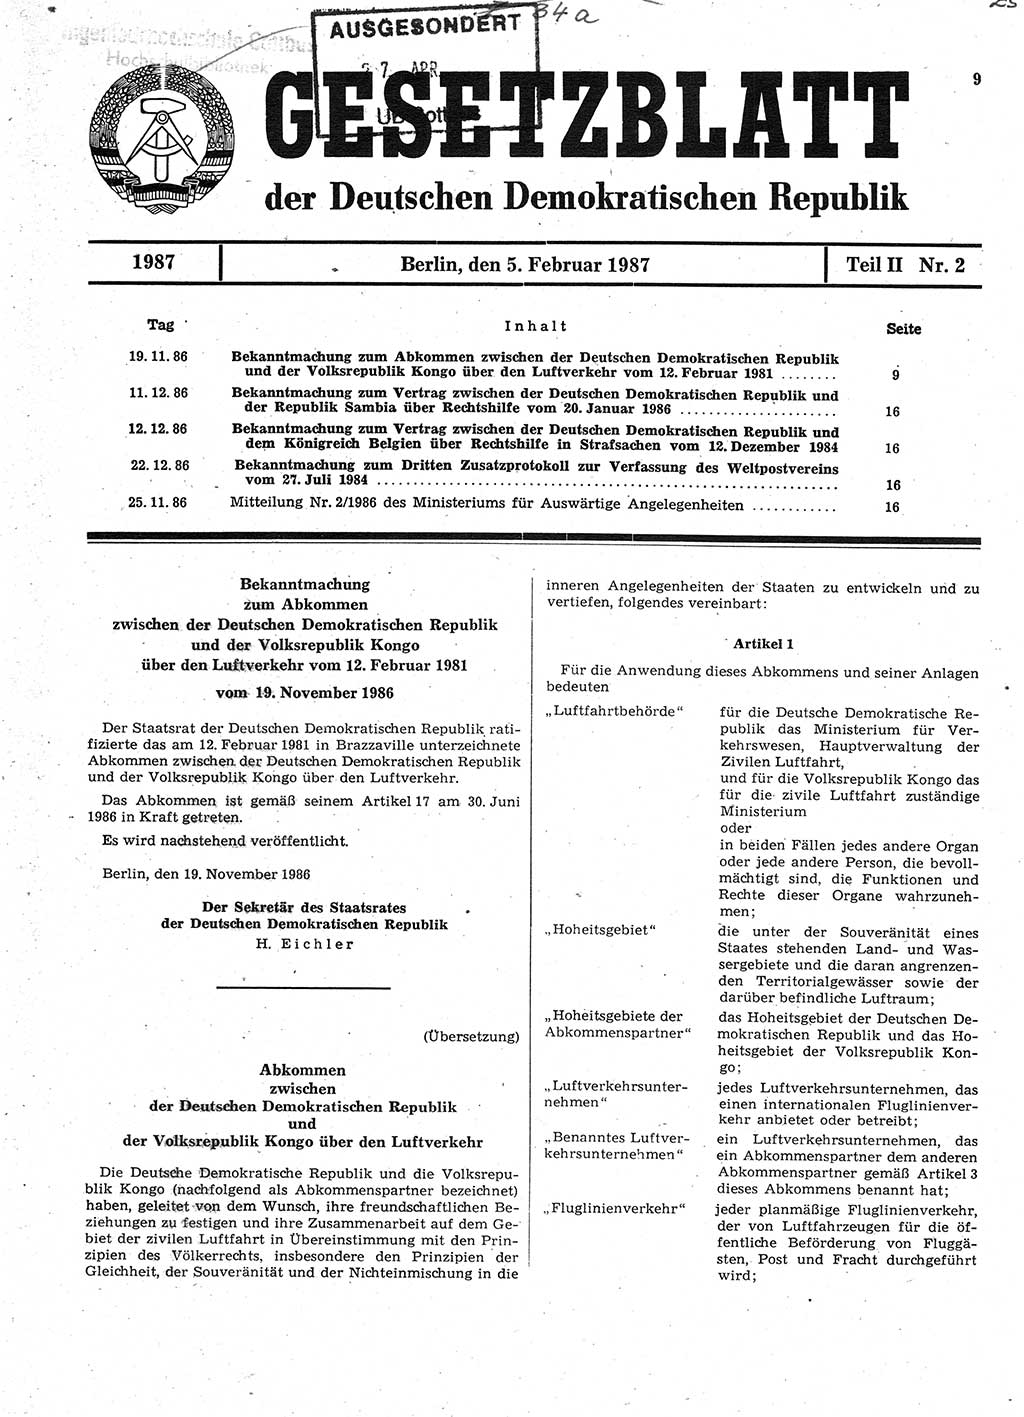 Gesetzblatt (GBl.) der Deutschen Demokratischen Republik (DDR) Teil ⅠⅠ 1987, Seite 9 (GBl. DDR ⅠⅠ 1987, S. 9)